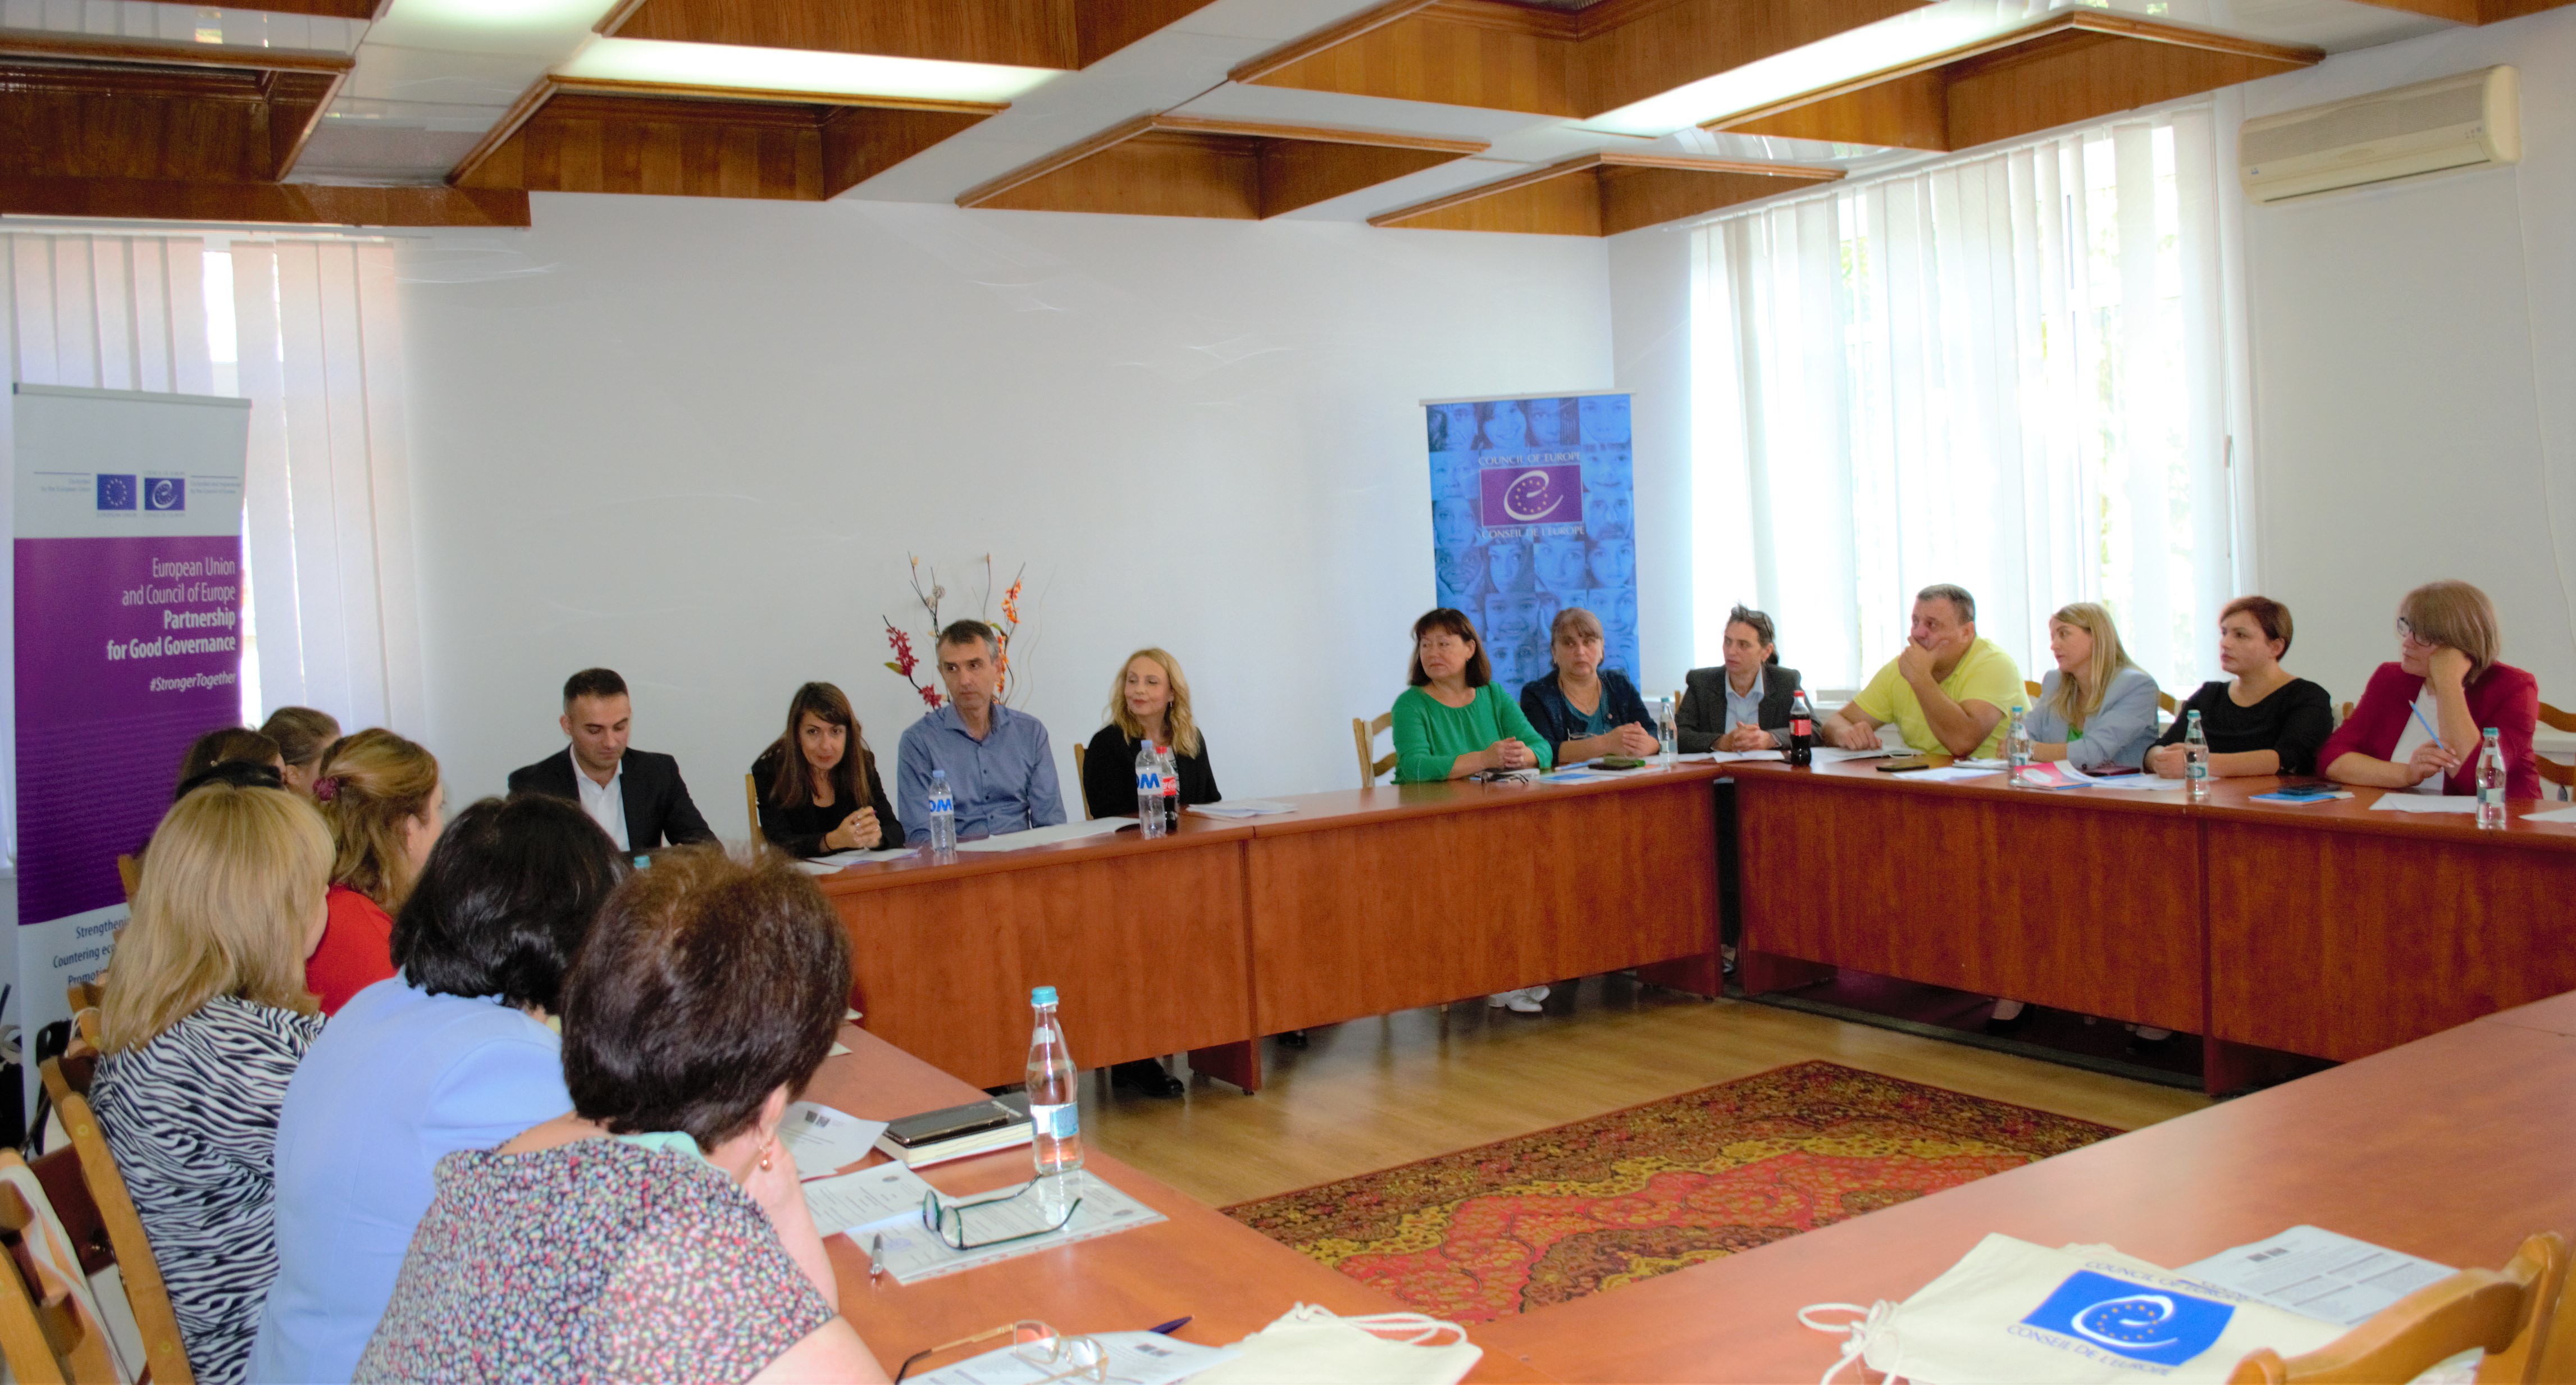 Punerea în discuție a necesităților locale pentru susținerea grupurilor vulnerabile împotriva urii în Republica Moldova